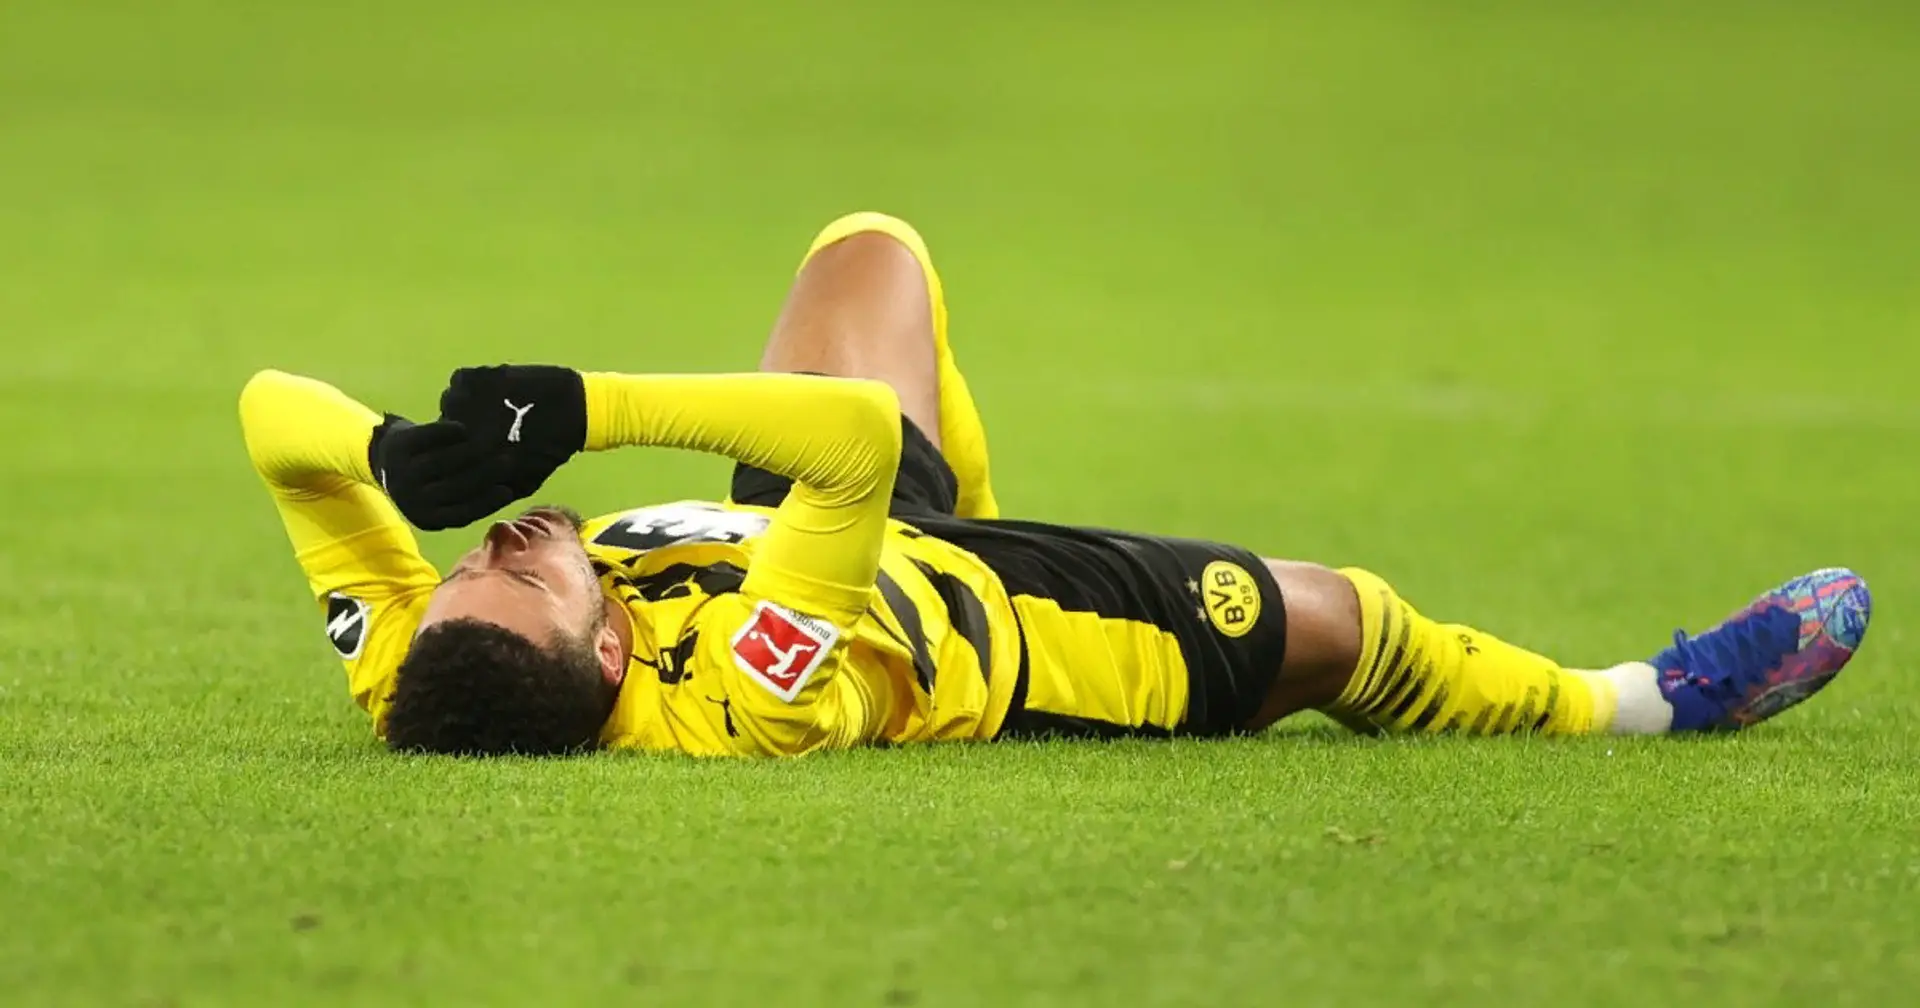 5. Platz droht: Dortmund hatte seit Jahren nicht so wenige Punkte nach 17 Spieltagen wie jetzt